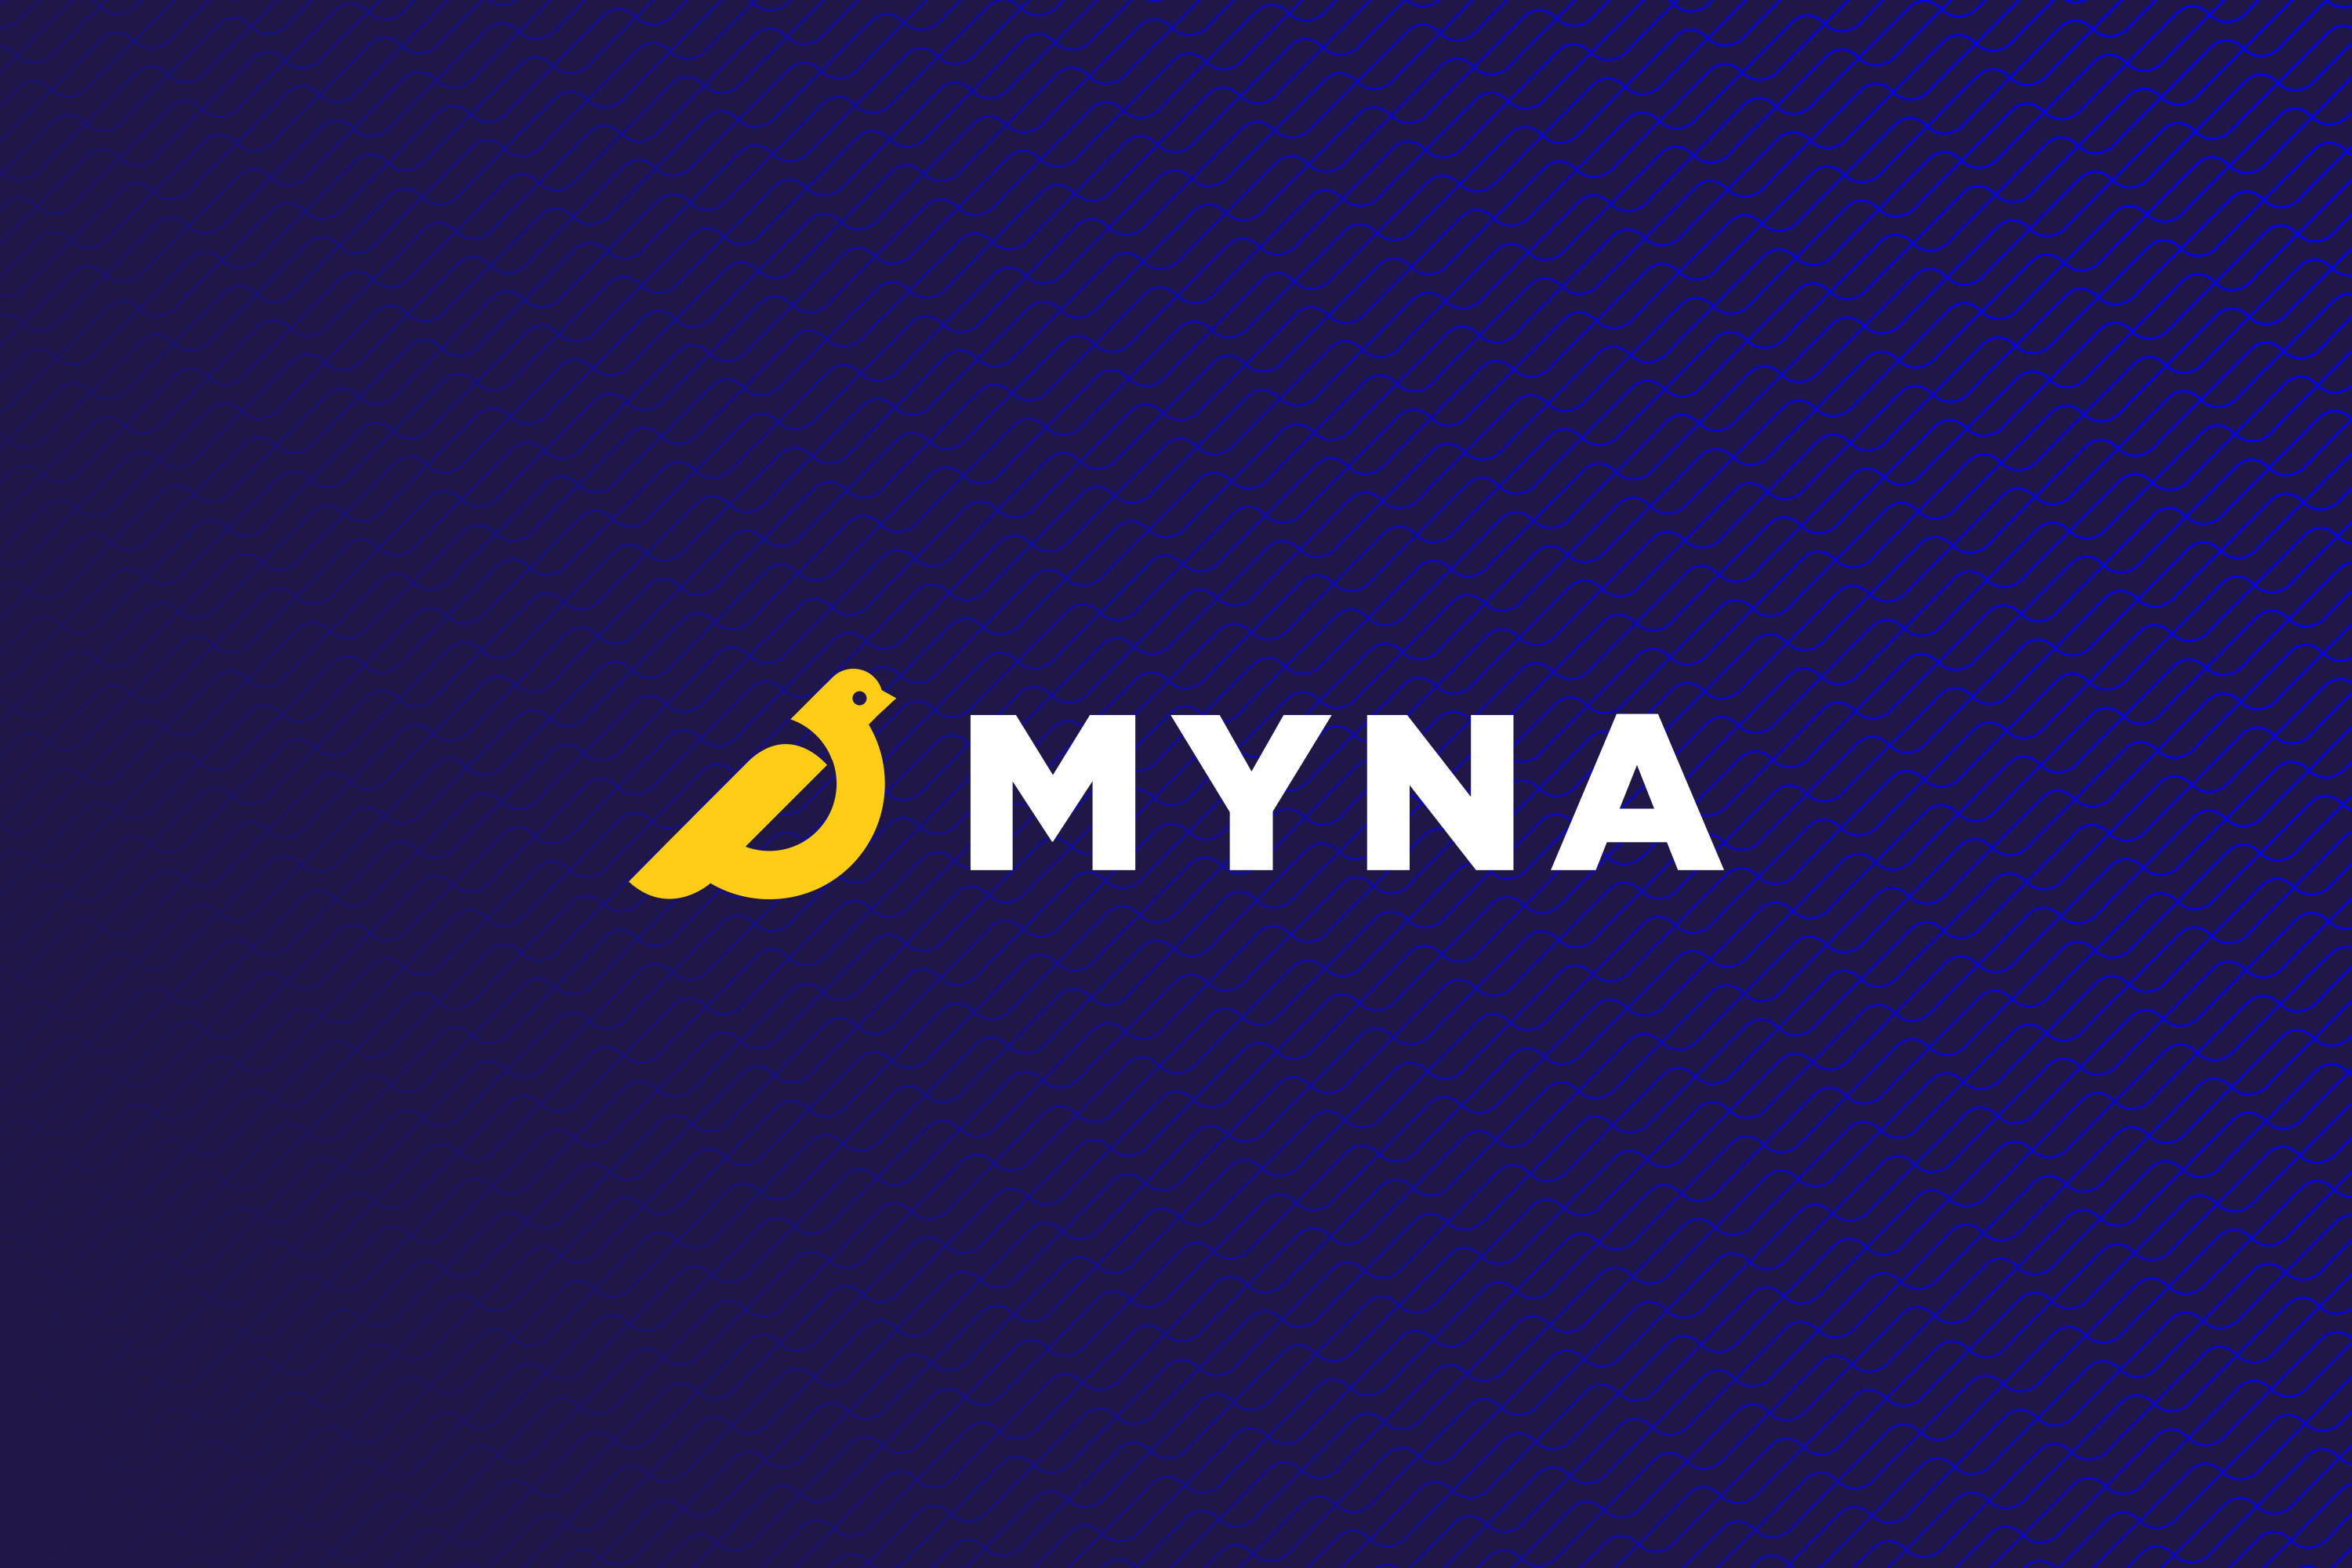 Myna logo, developed by Mighty